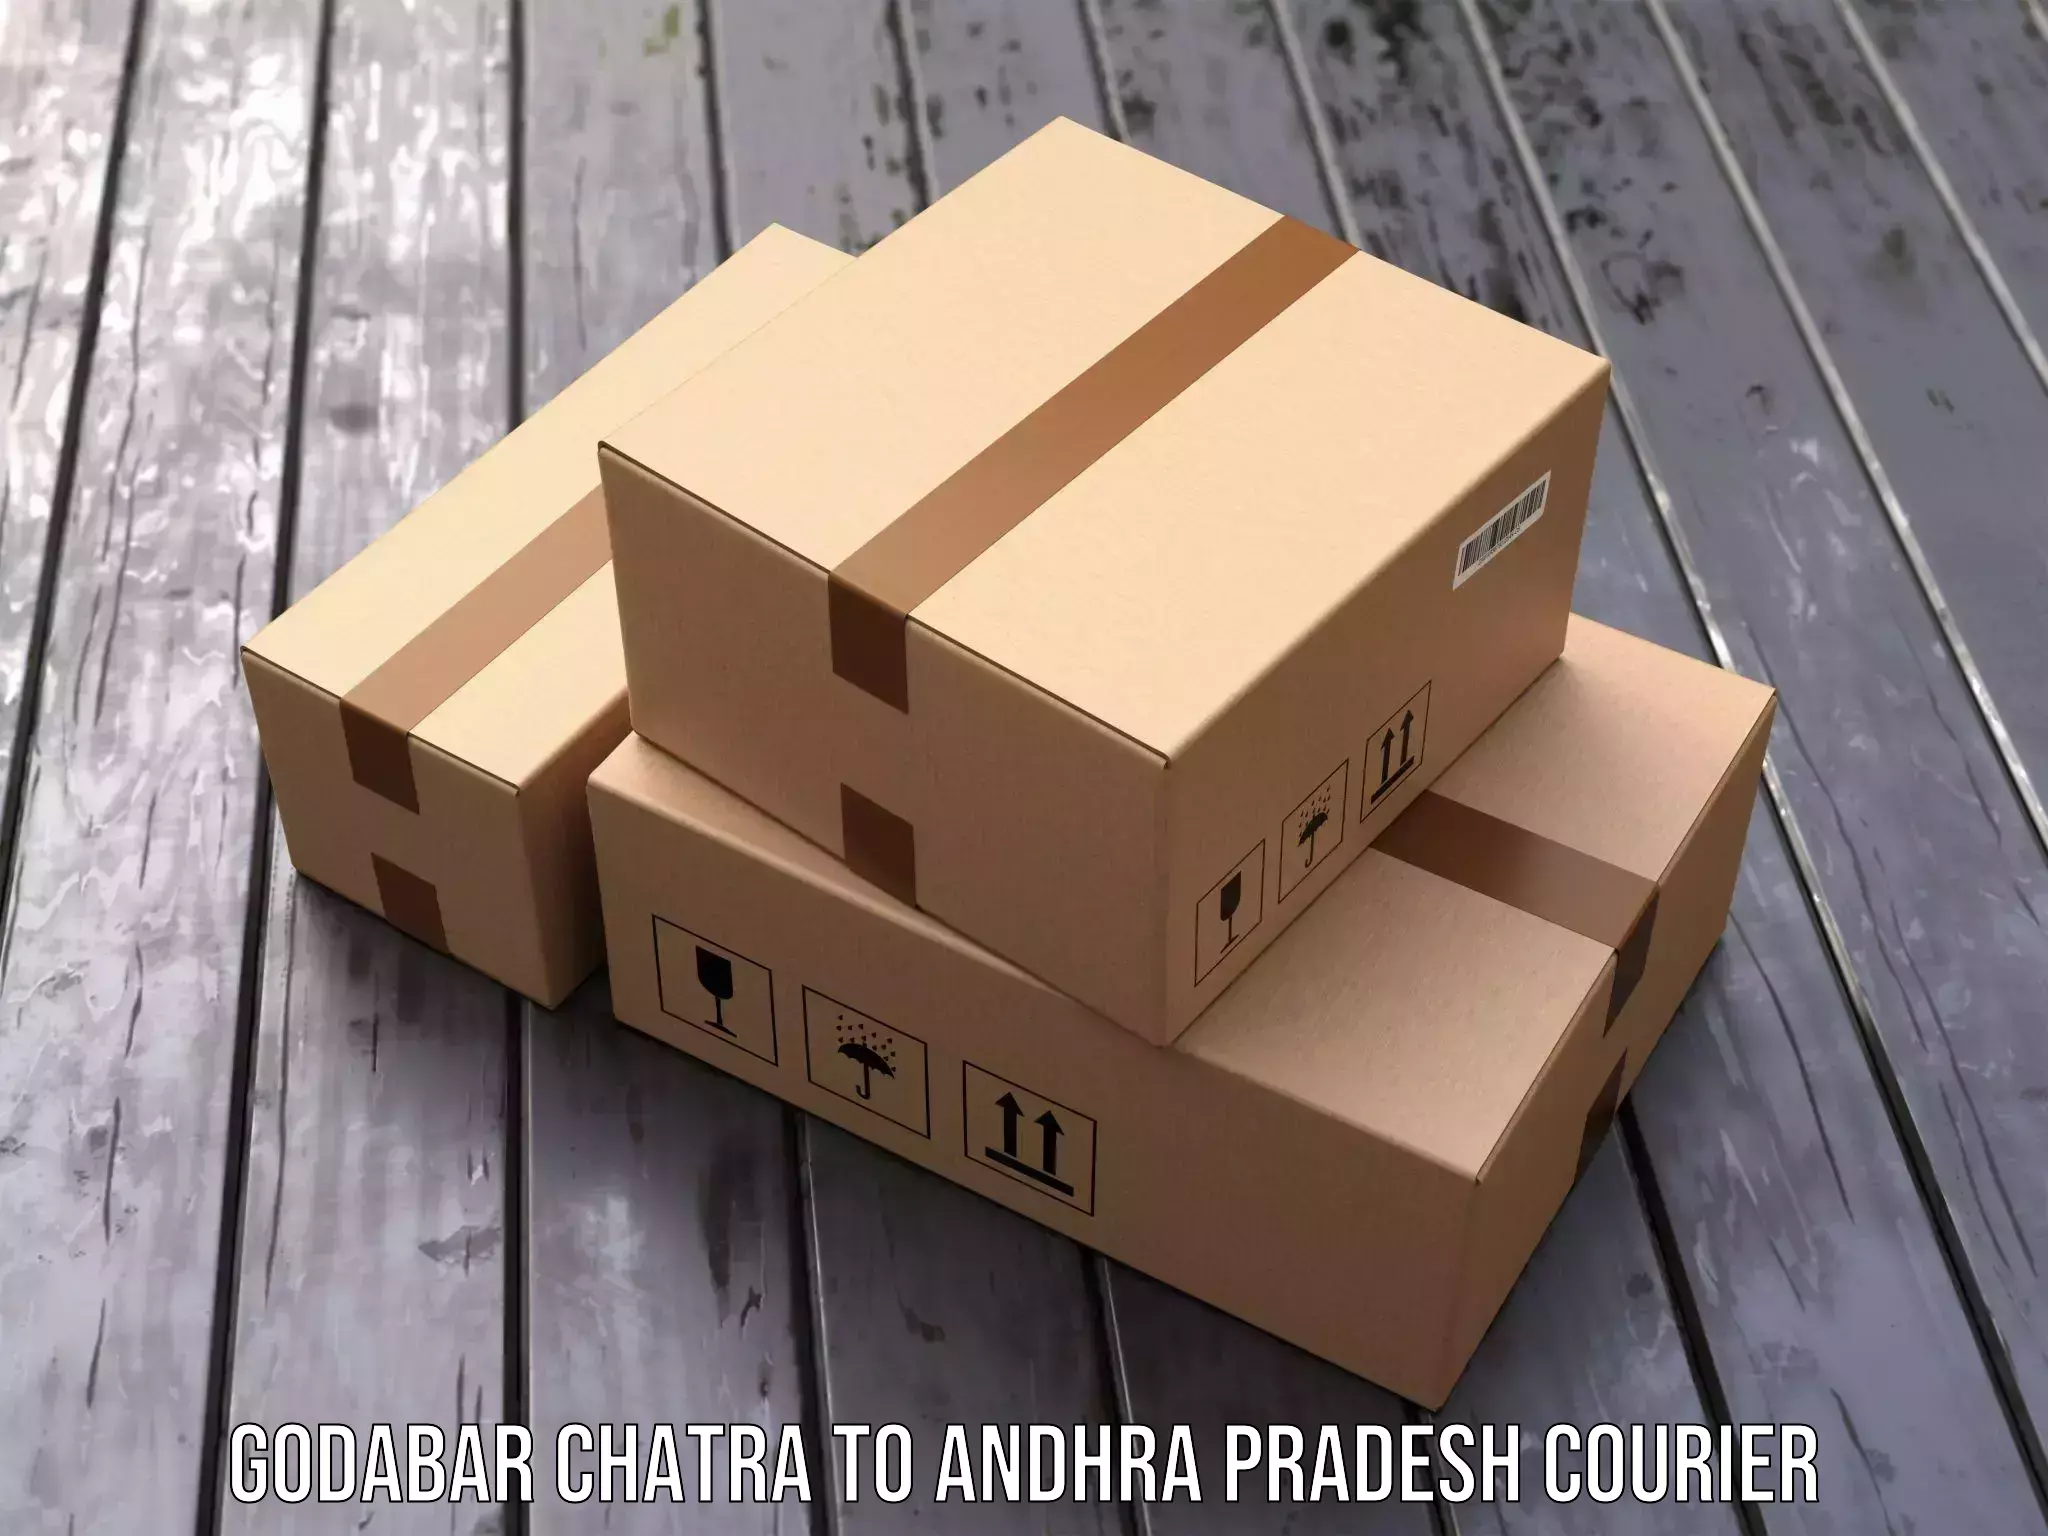 Digital courier platforms Godabar Chatra to Andhra Pradesh